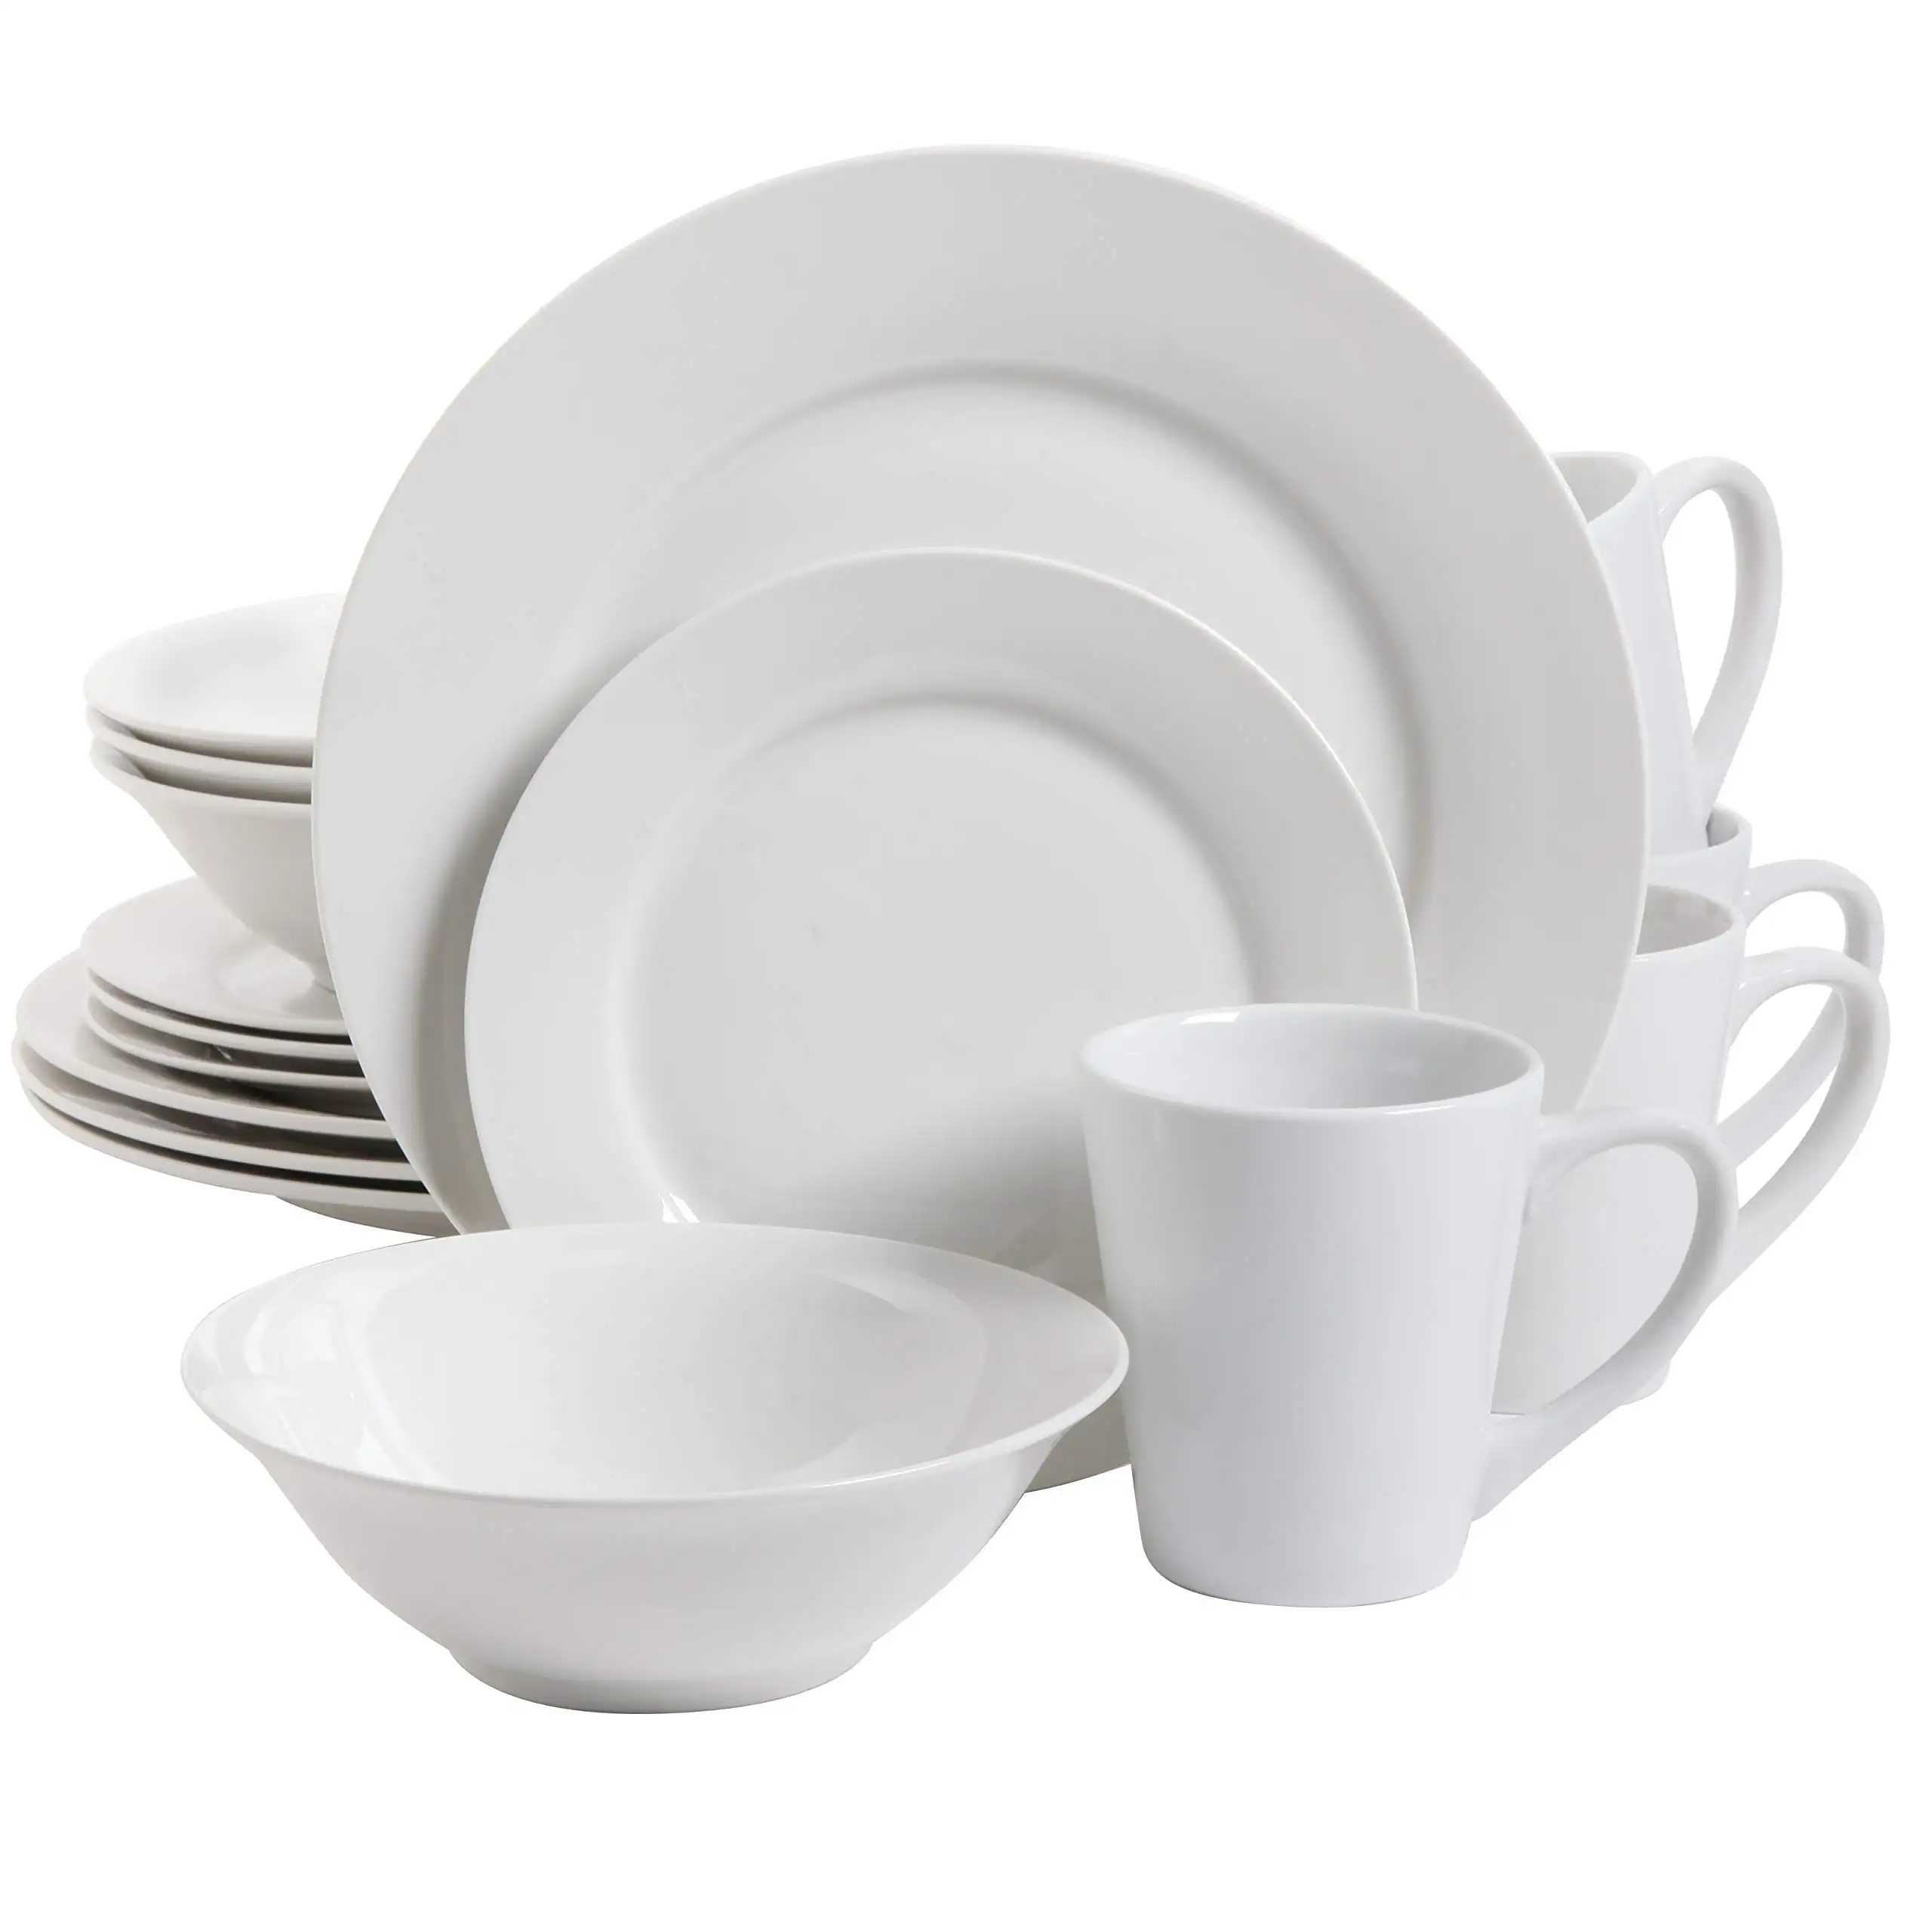 16 или 32 шт. керамические наборы для супа, тарелка для риса, набор тарелок для супа, белый простой фарфоровый обеденный набор